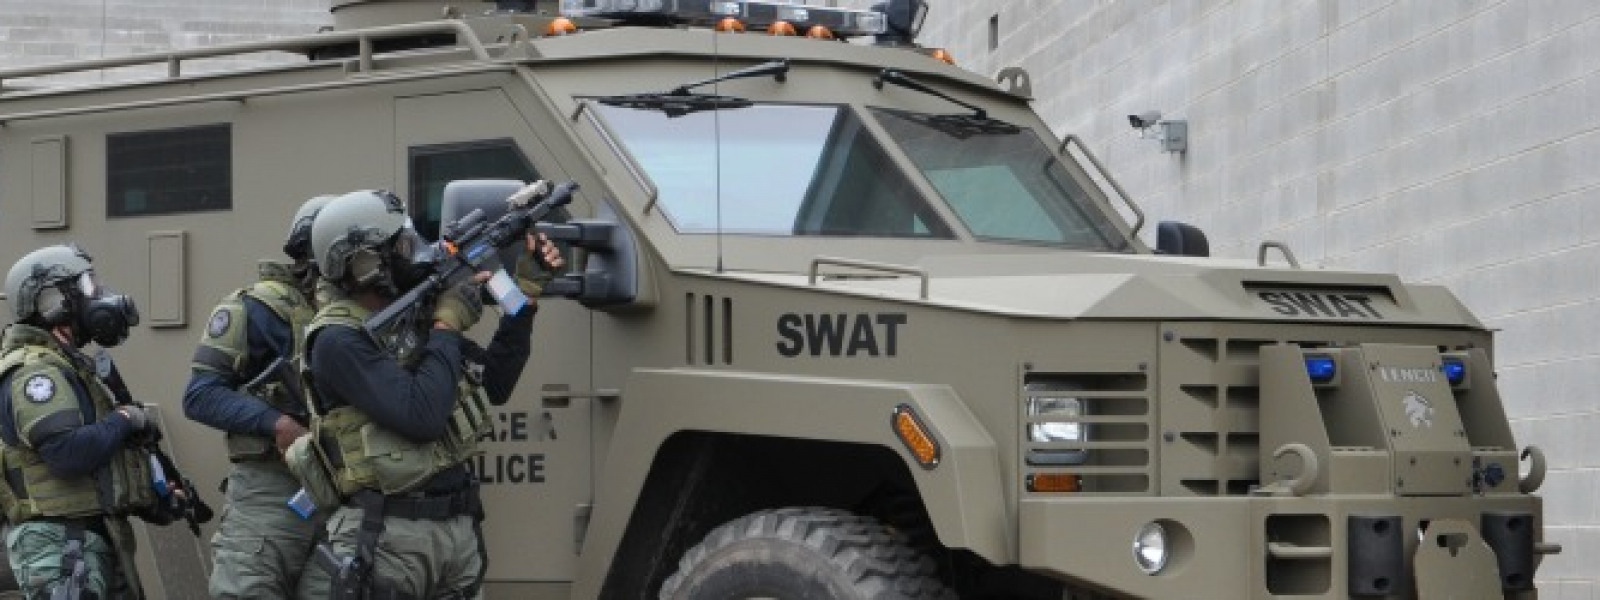 SWAT II